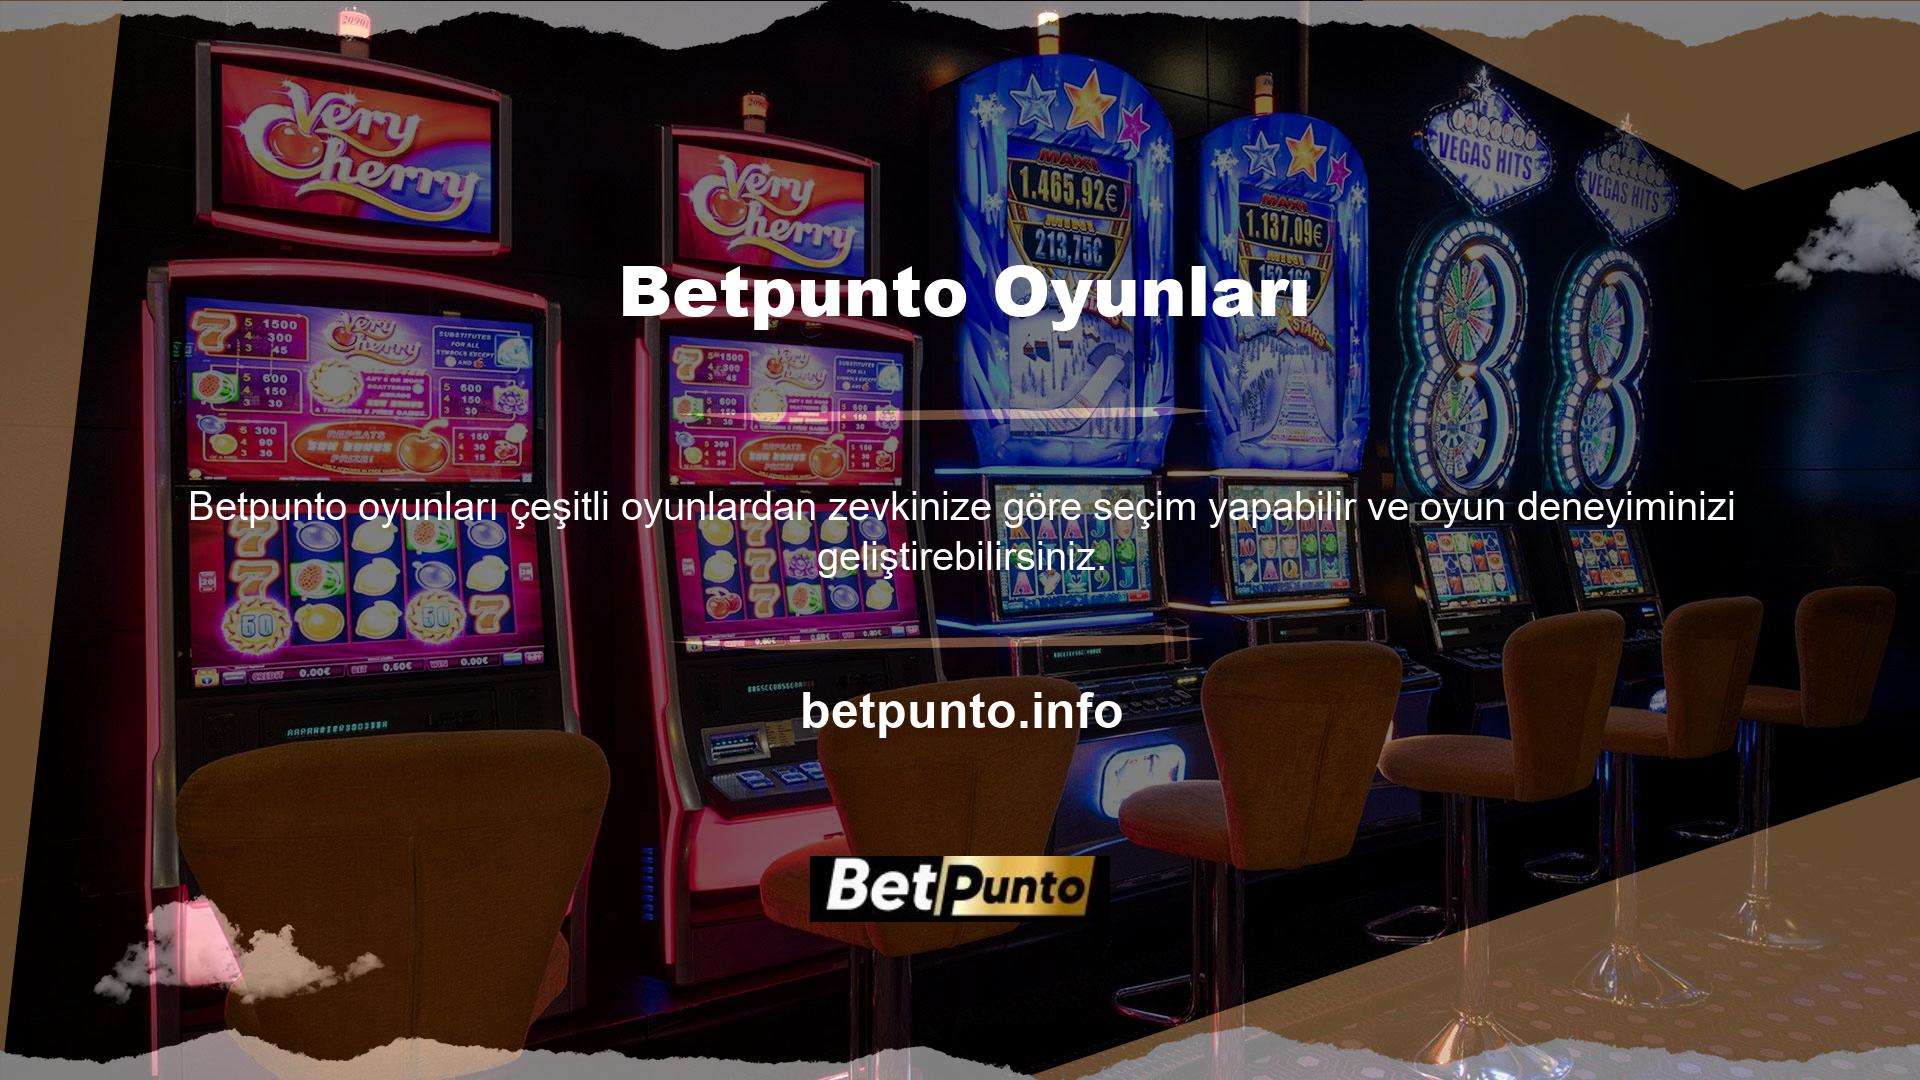 Bu bahis sitesi, en popüler çevrimiçi bahis sitelerinden biridir ve birinci sınıf casino oyun hizmetleri sunar